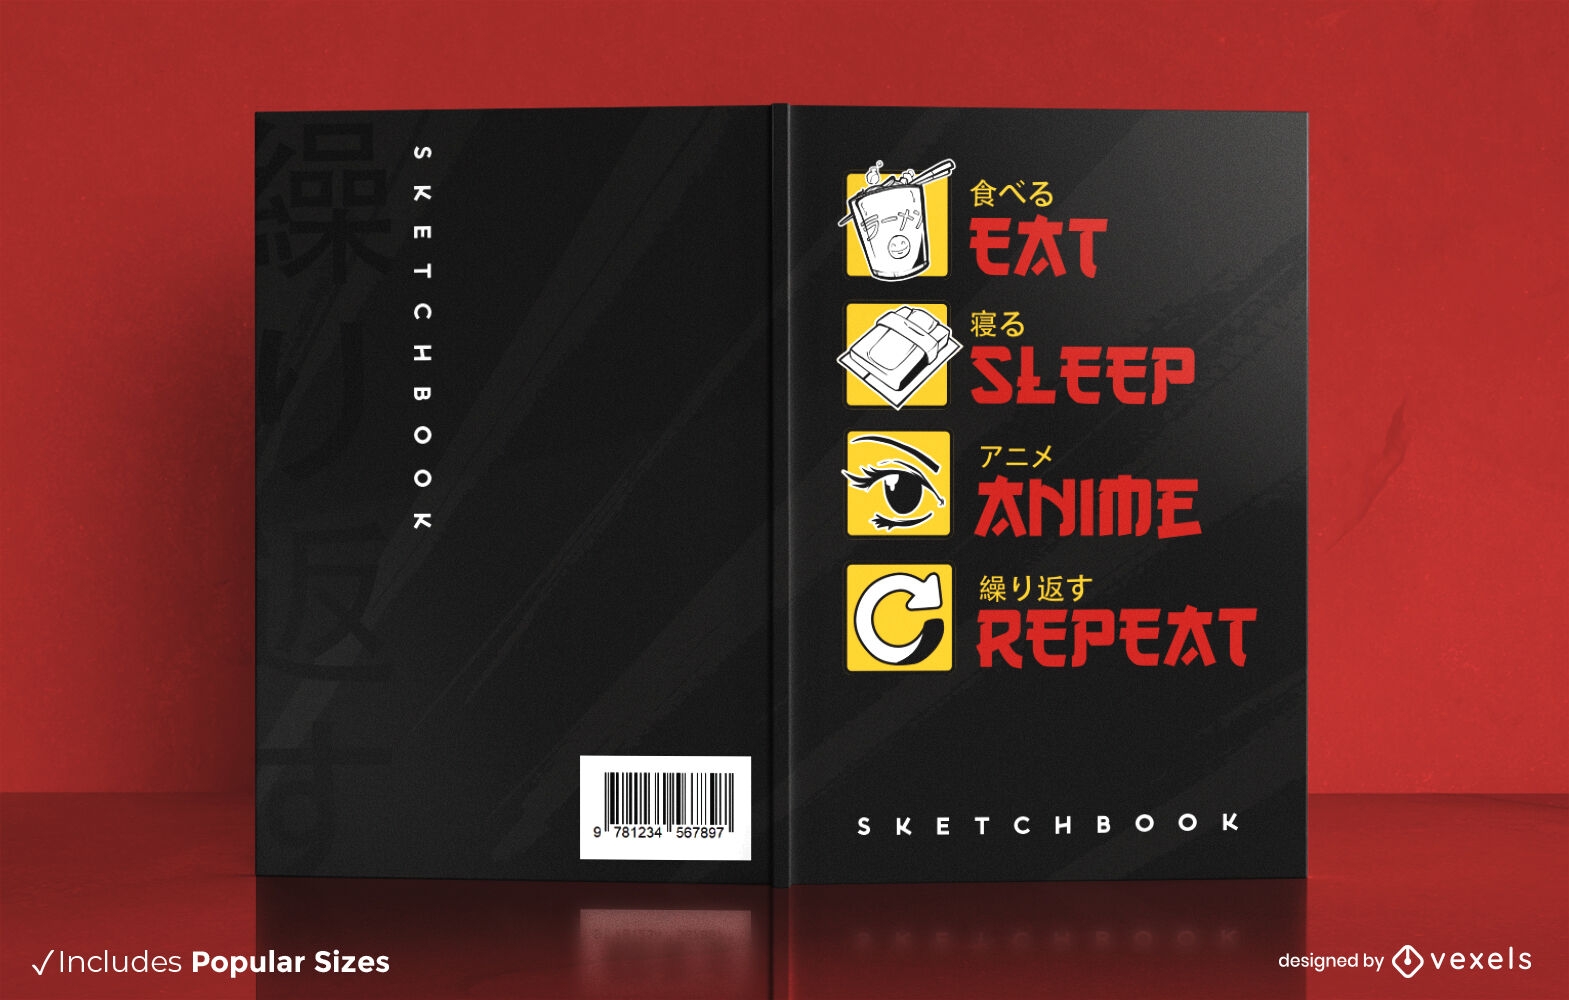 Come, duerme y mira el diseño de la portada del libro de anime.